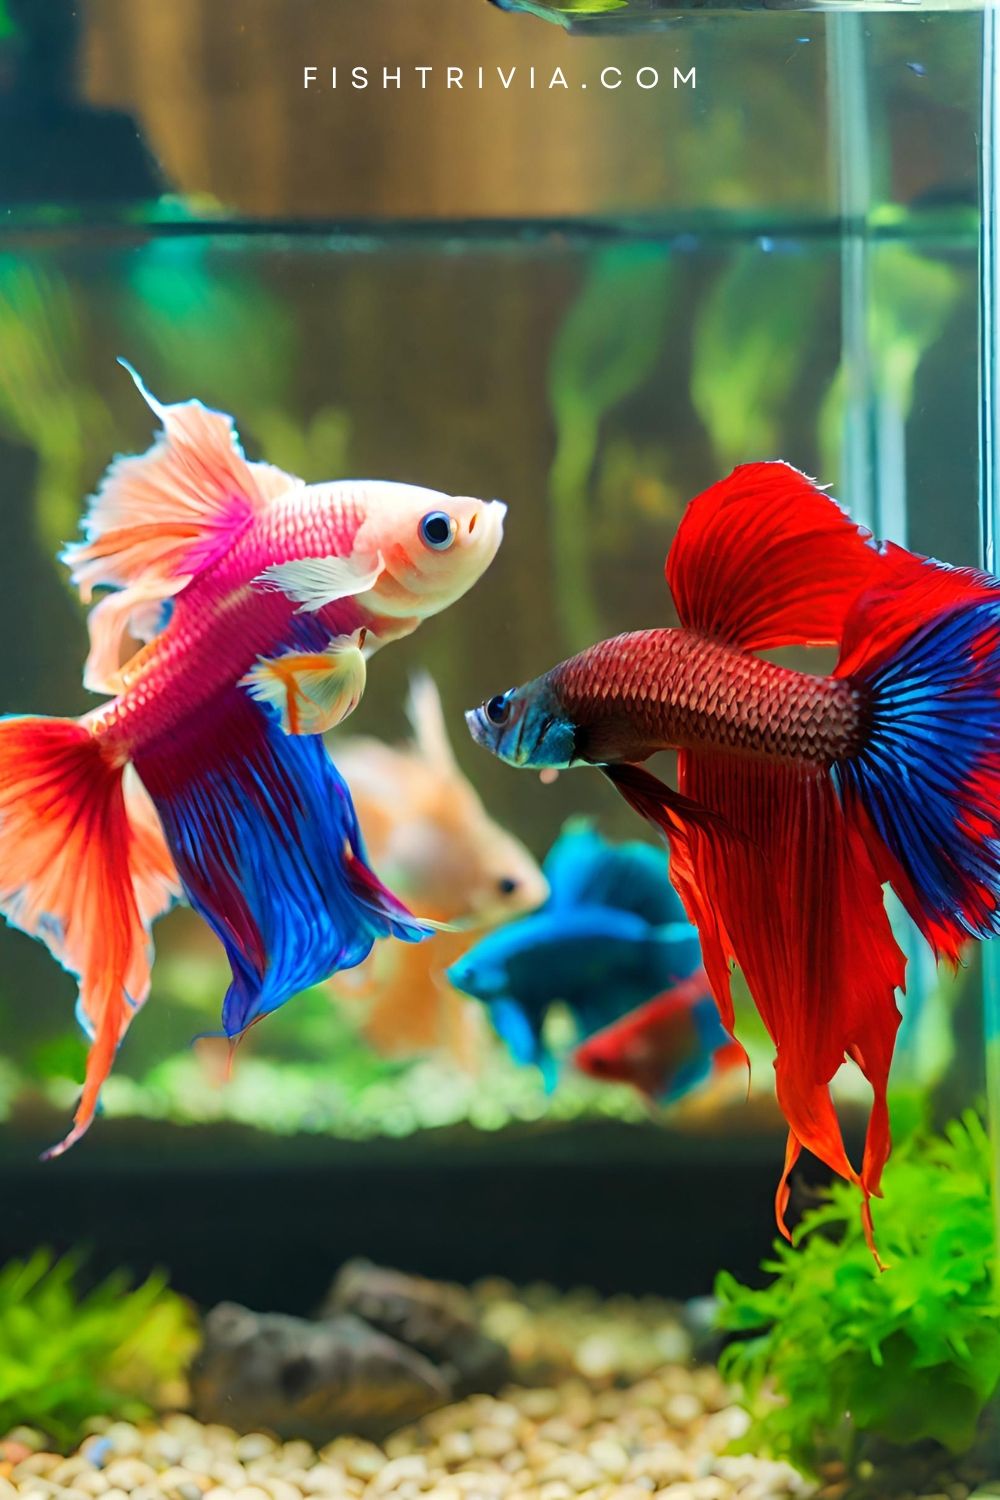 Colorful Betta Fish